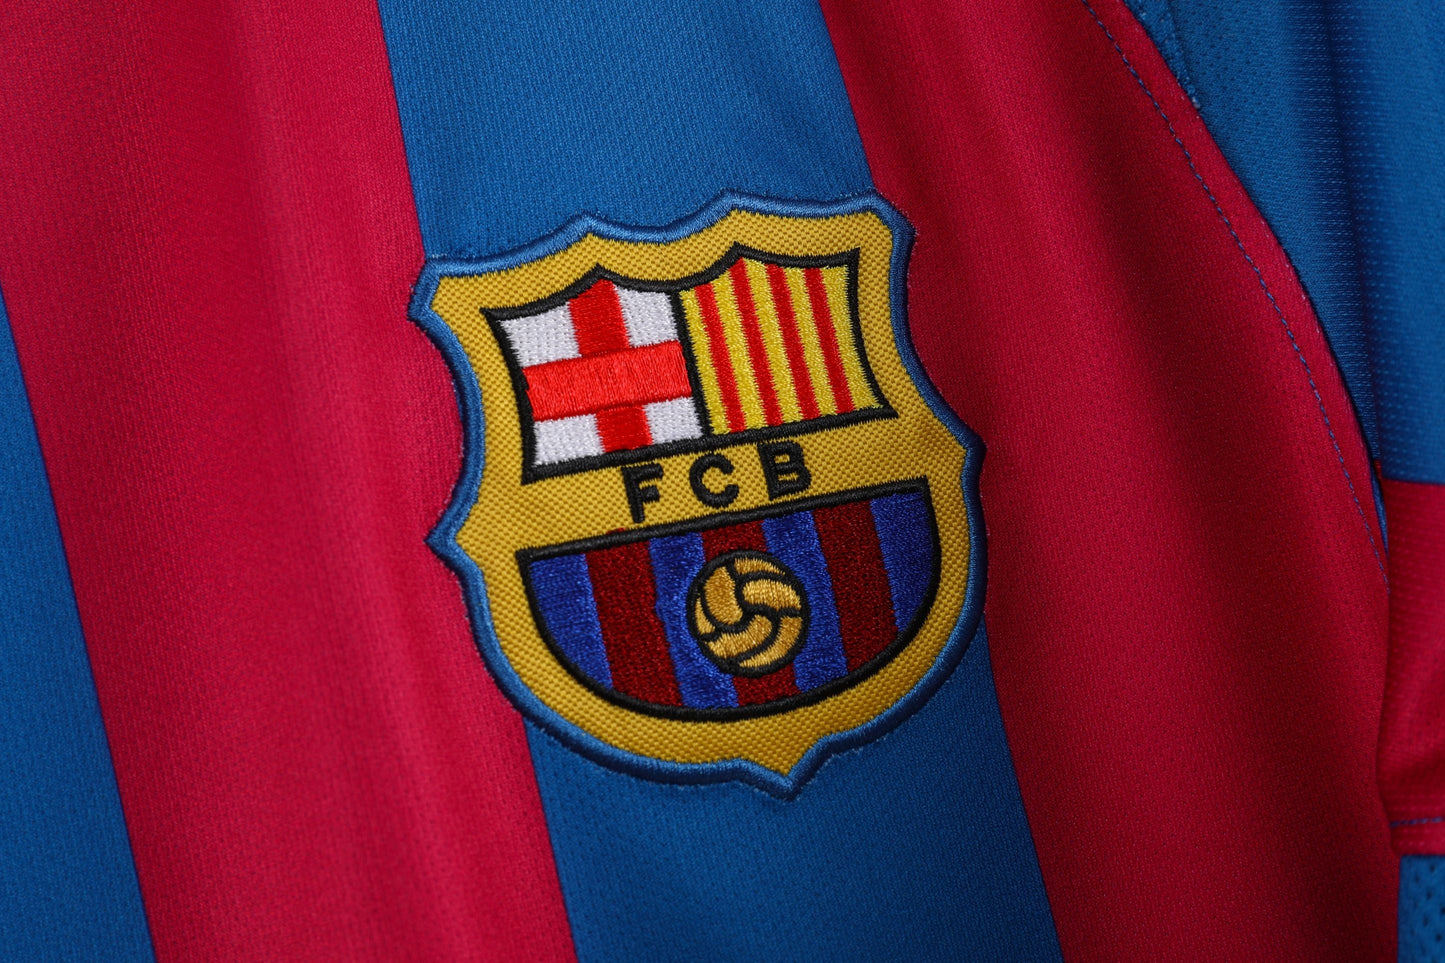 2005/06 Barcelona home game